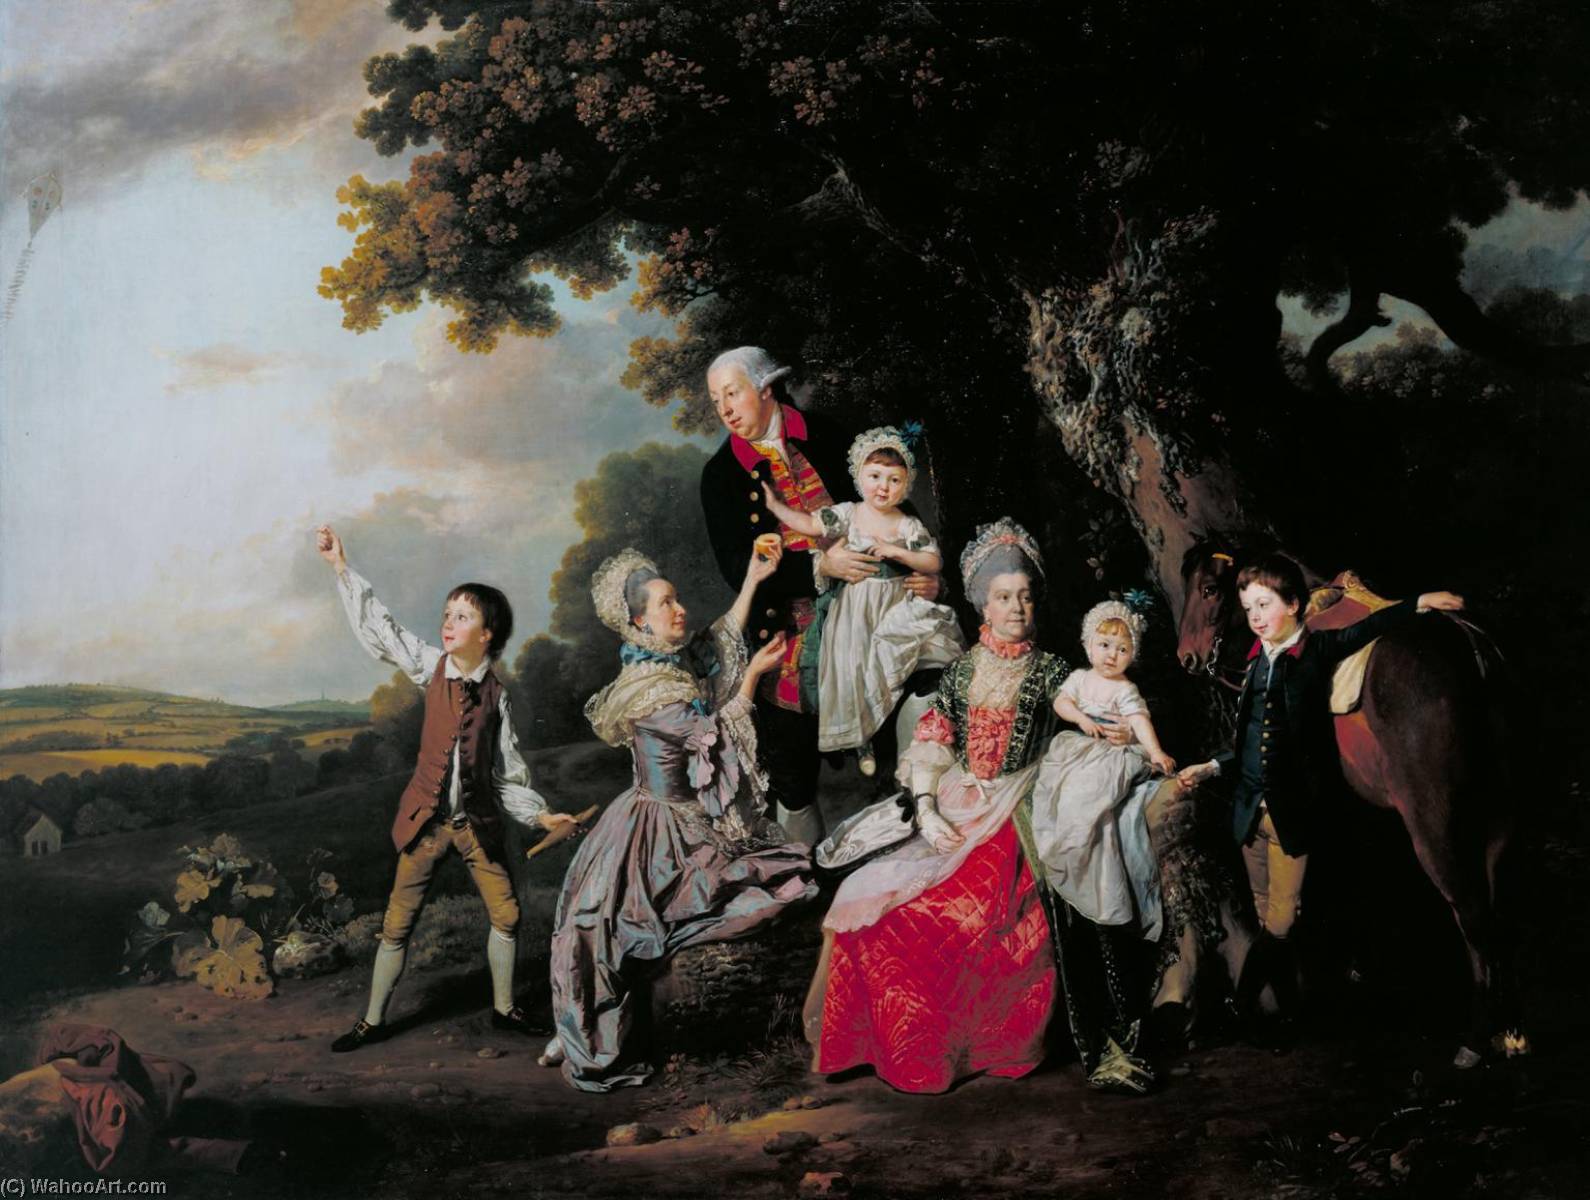 WikiOO.org - Encyclopedia of Fine Arts - Maľba, Artwork Johann Zoffany - The Bradshaw Family